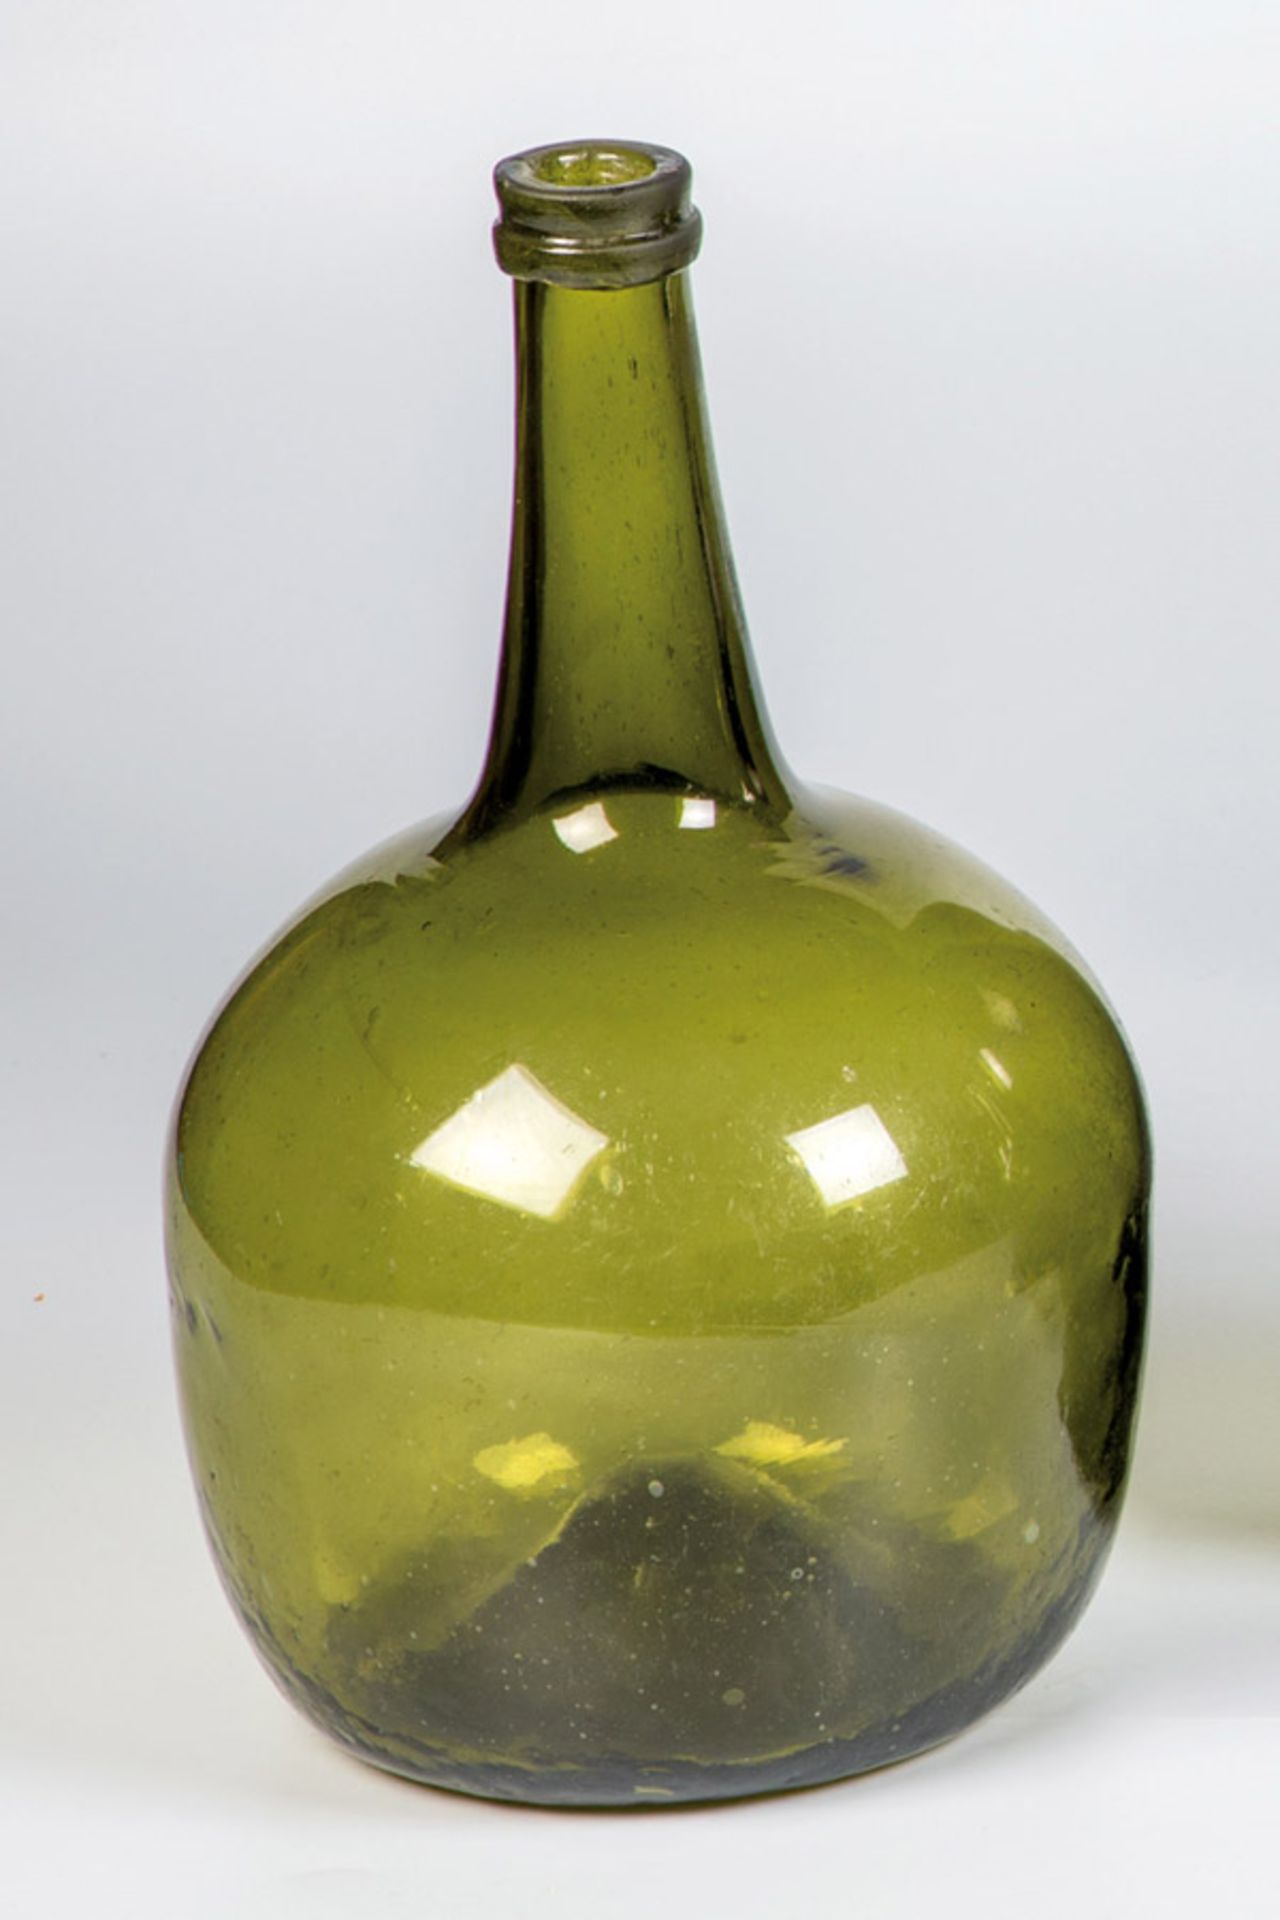 Große KugelflascheMecklenburg, 18. Jh. Olivfarbenes Glas mit hochgestochenem Boden und Abriss, der